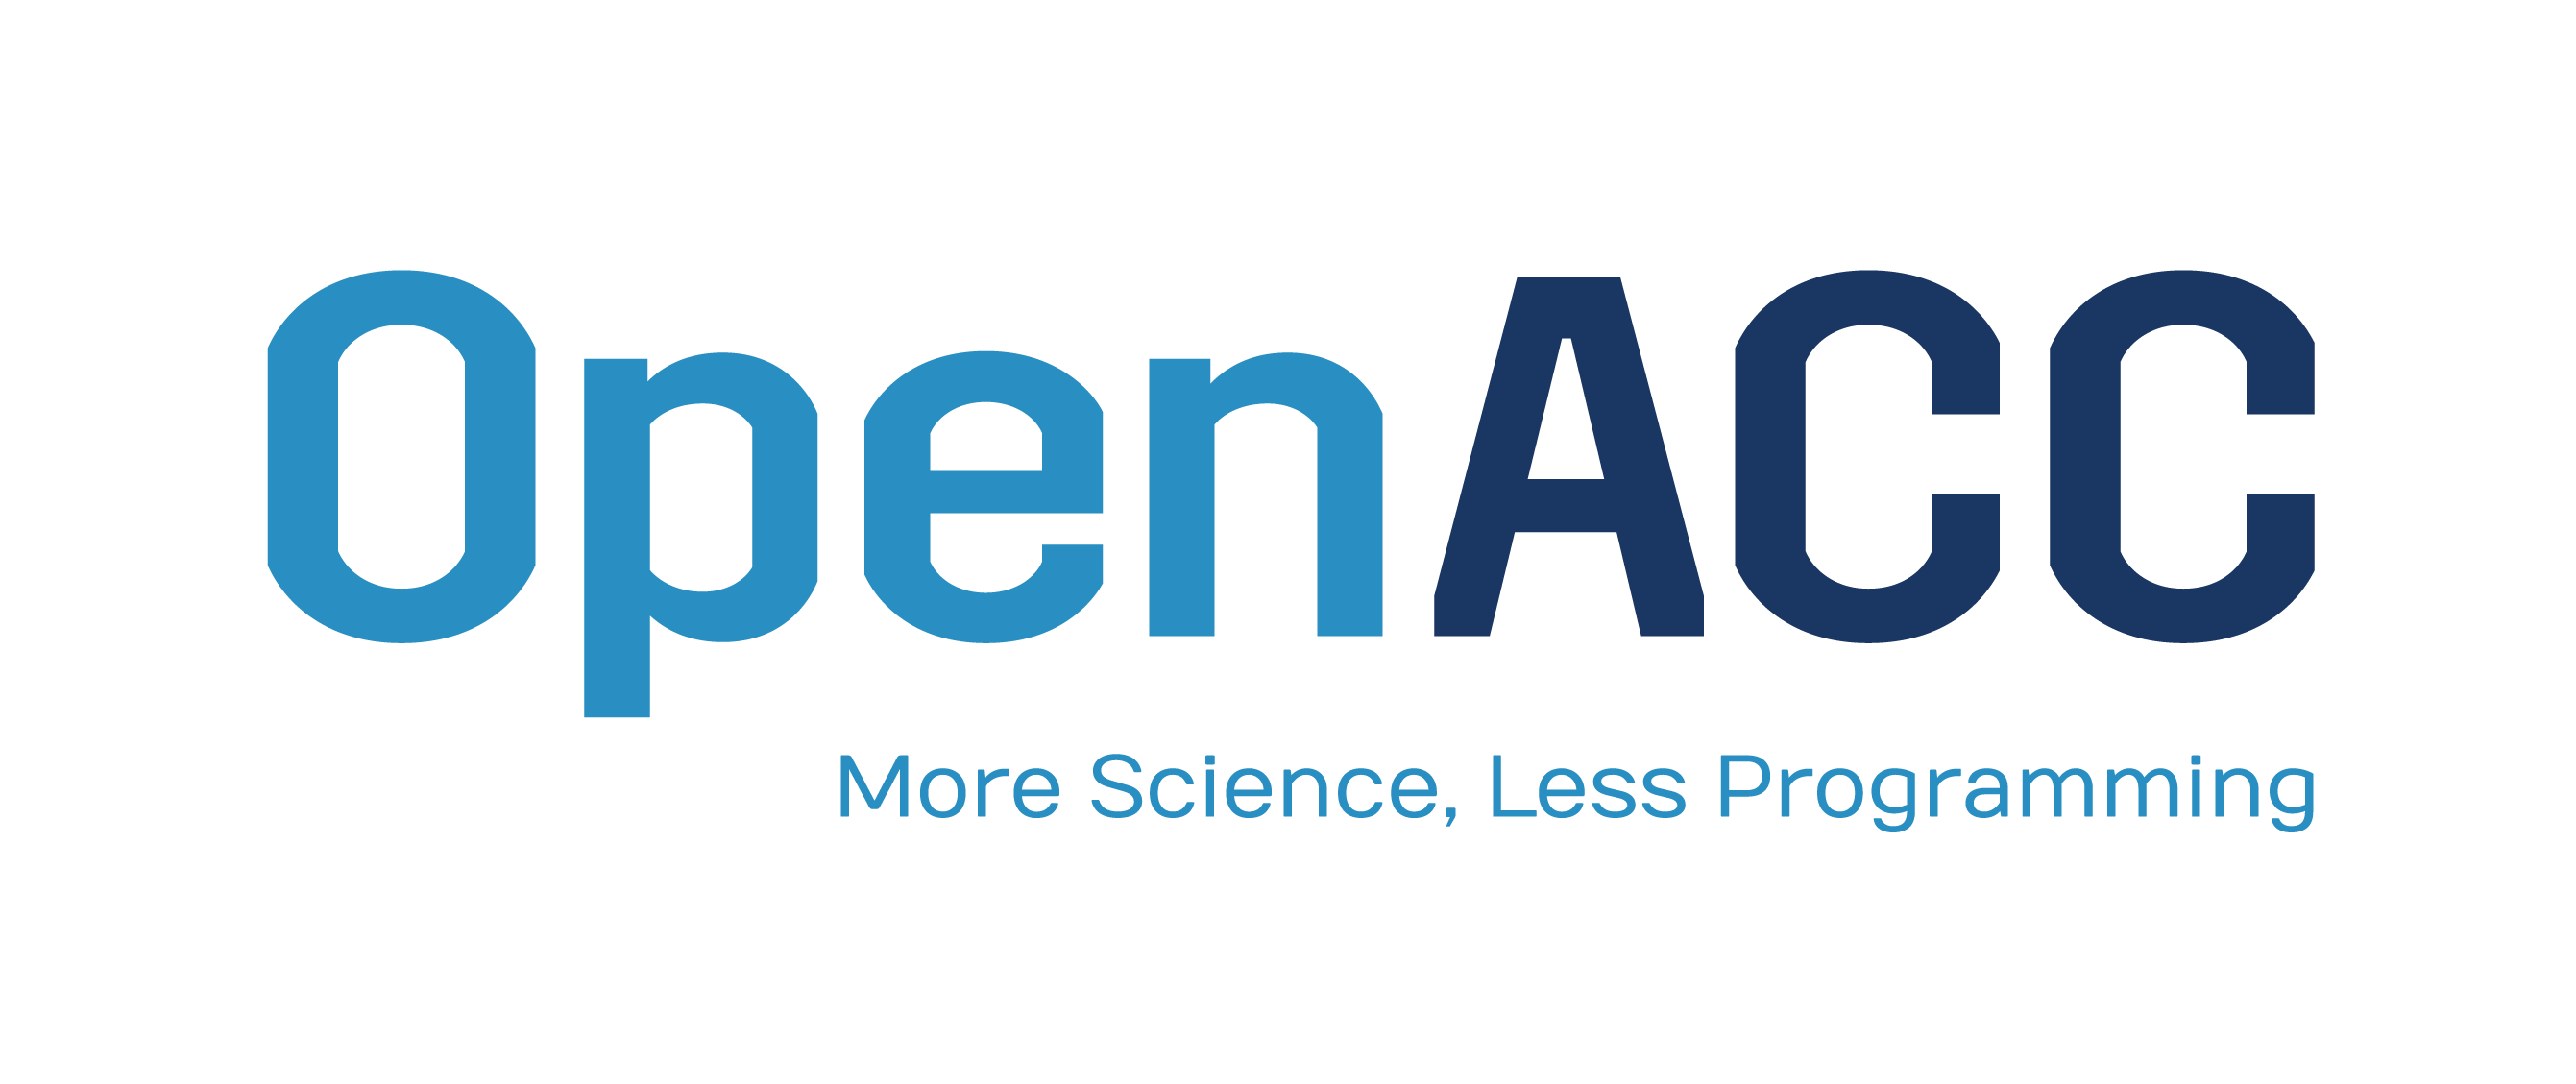 OpenACC Logo